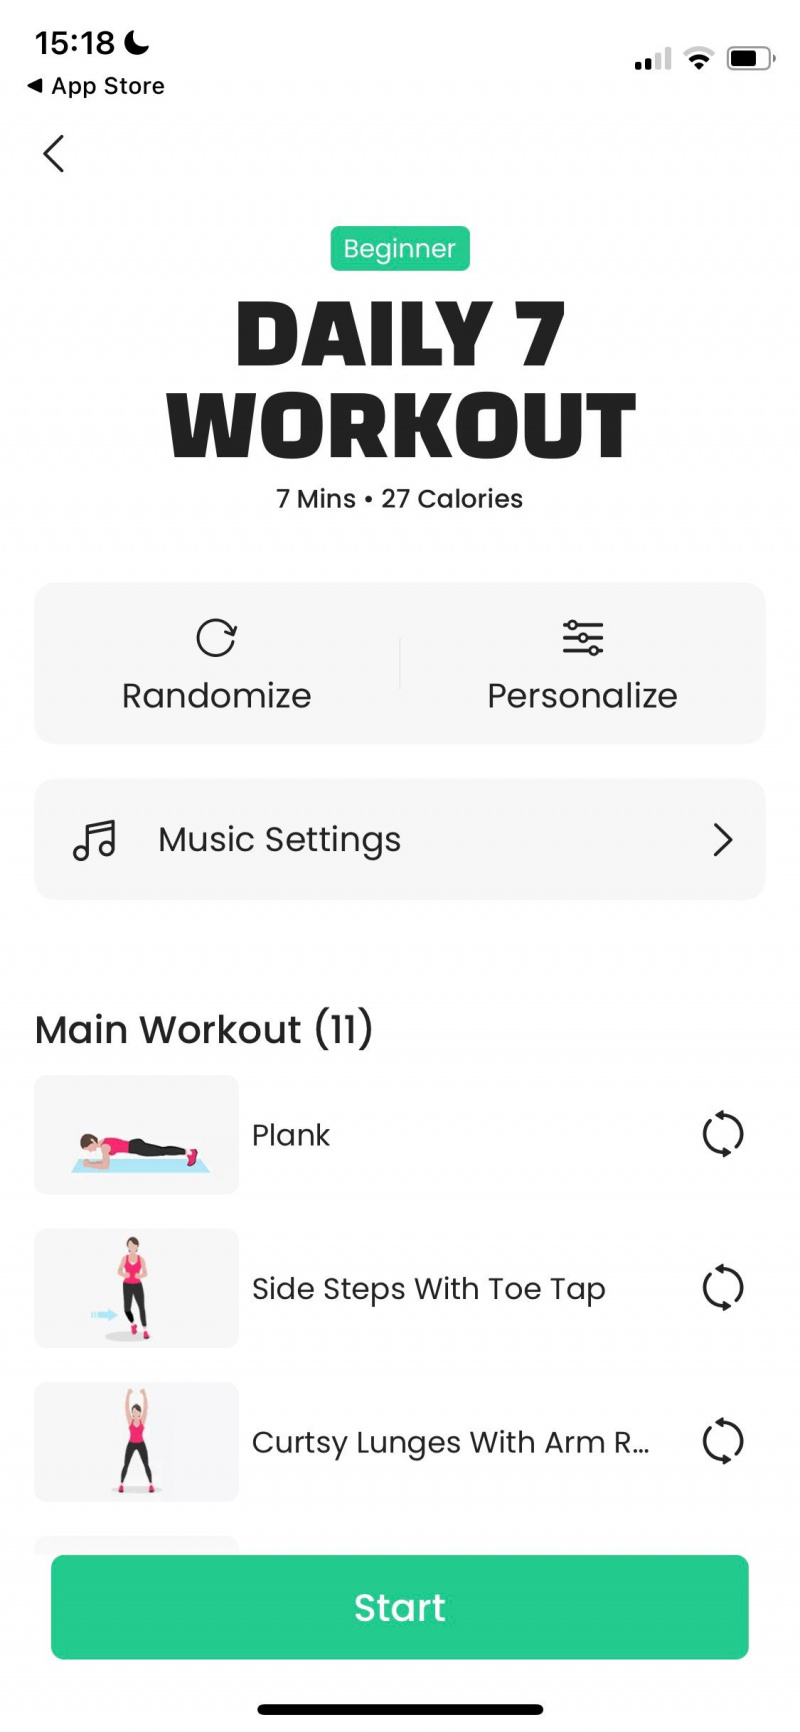   Captura de pantalla de la aplicación 7M Workout que muestra un programa de entrenamiento diario